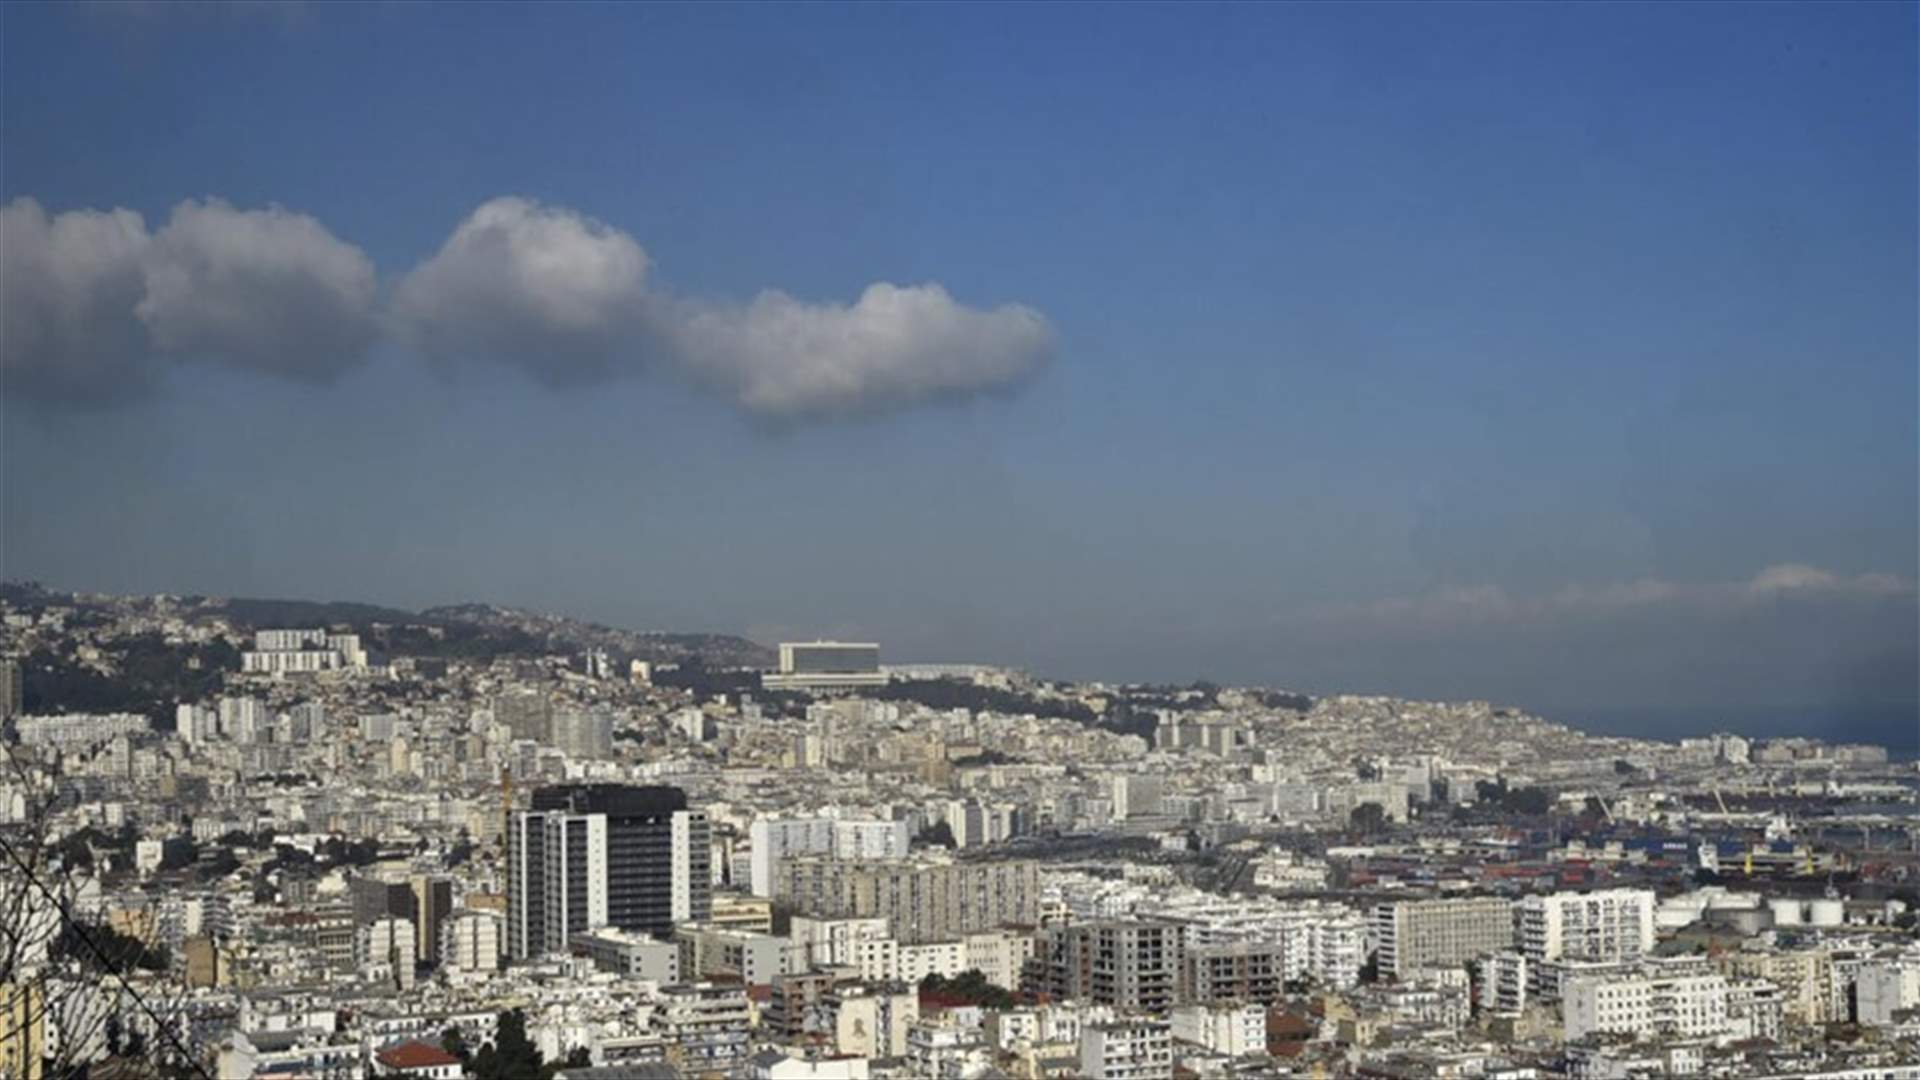 بعد تنشقهم أحادي أكسيد الكربون... وفاة 6 أفراد من عائلة واحدة في الجزائر